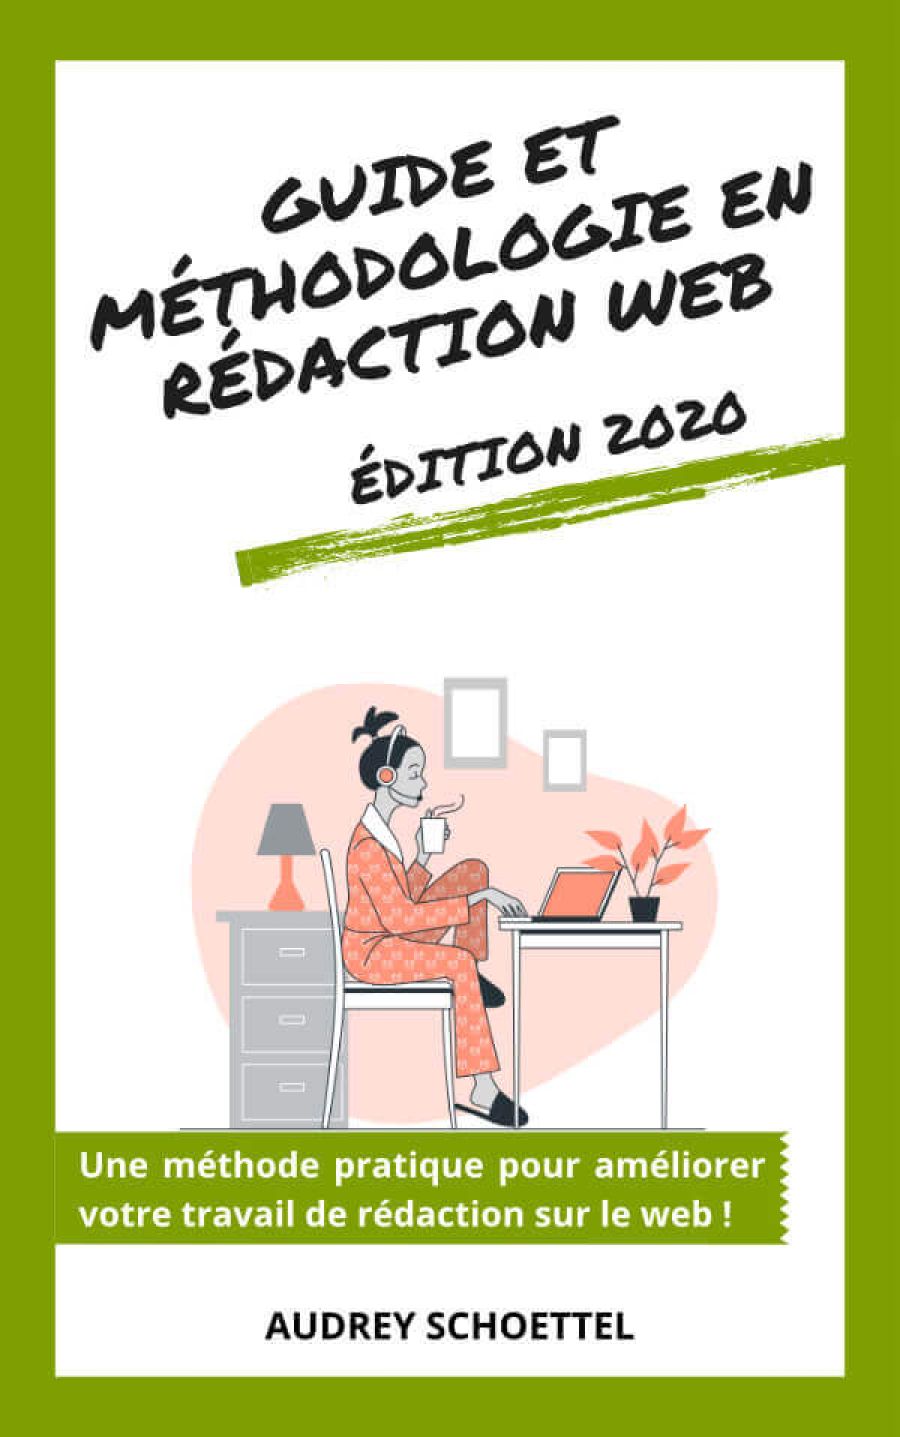 Guide et méthodologie en rédaction web